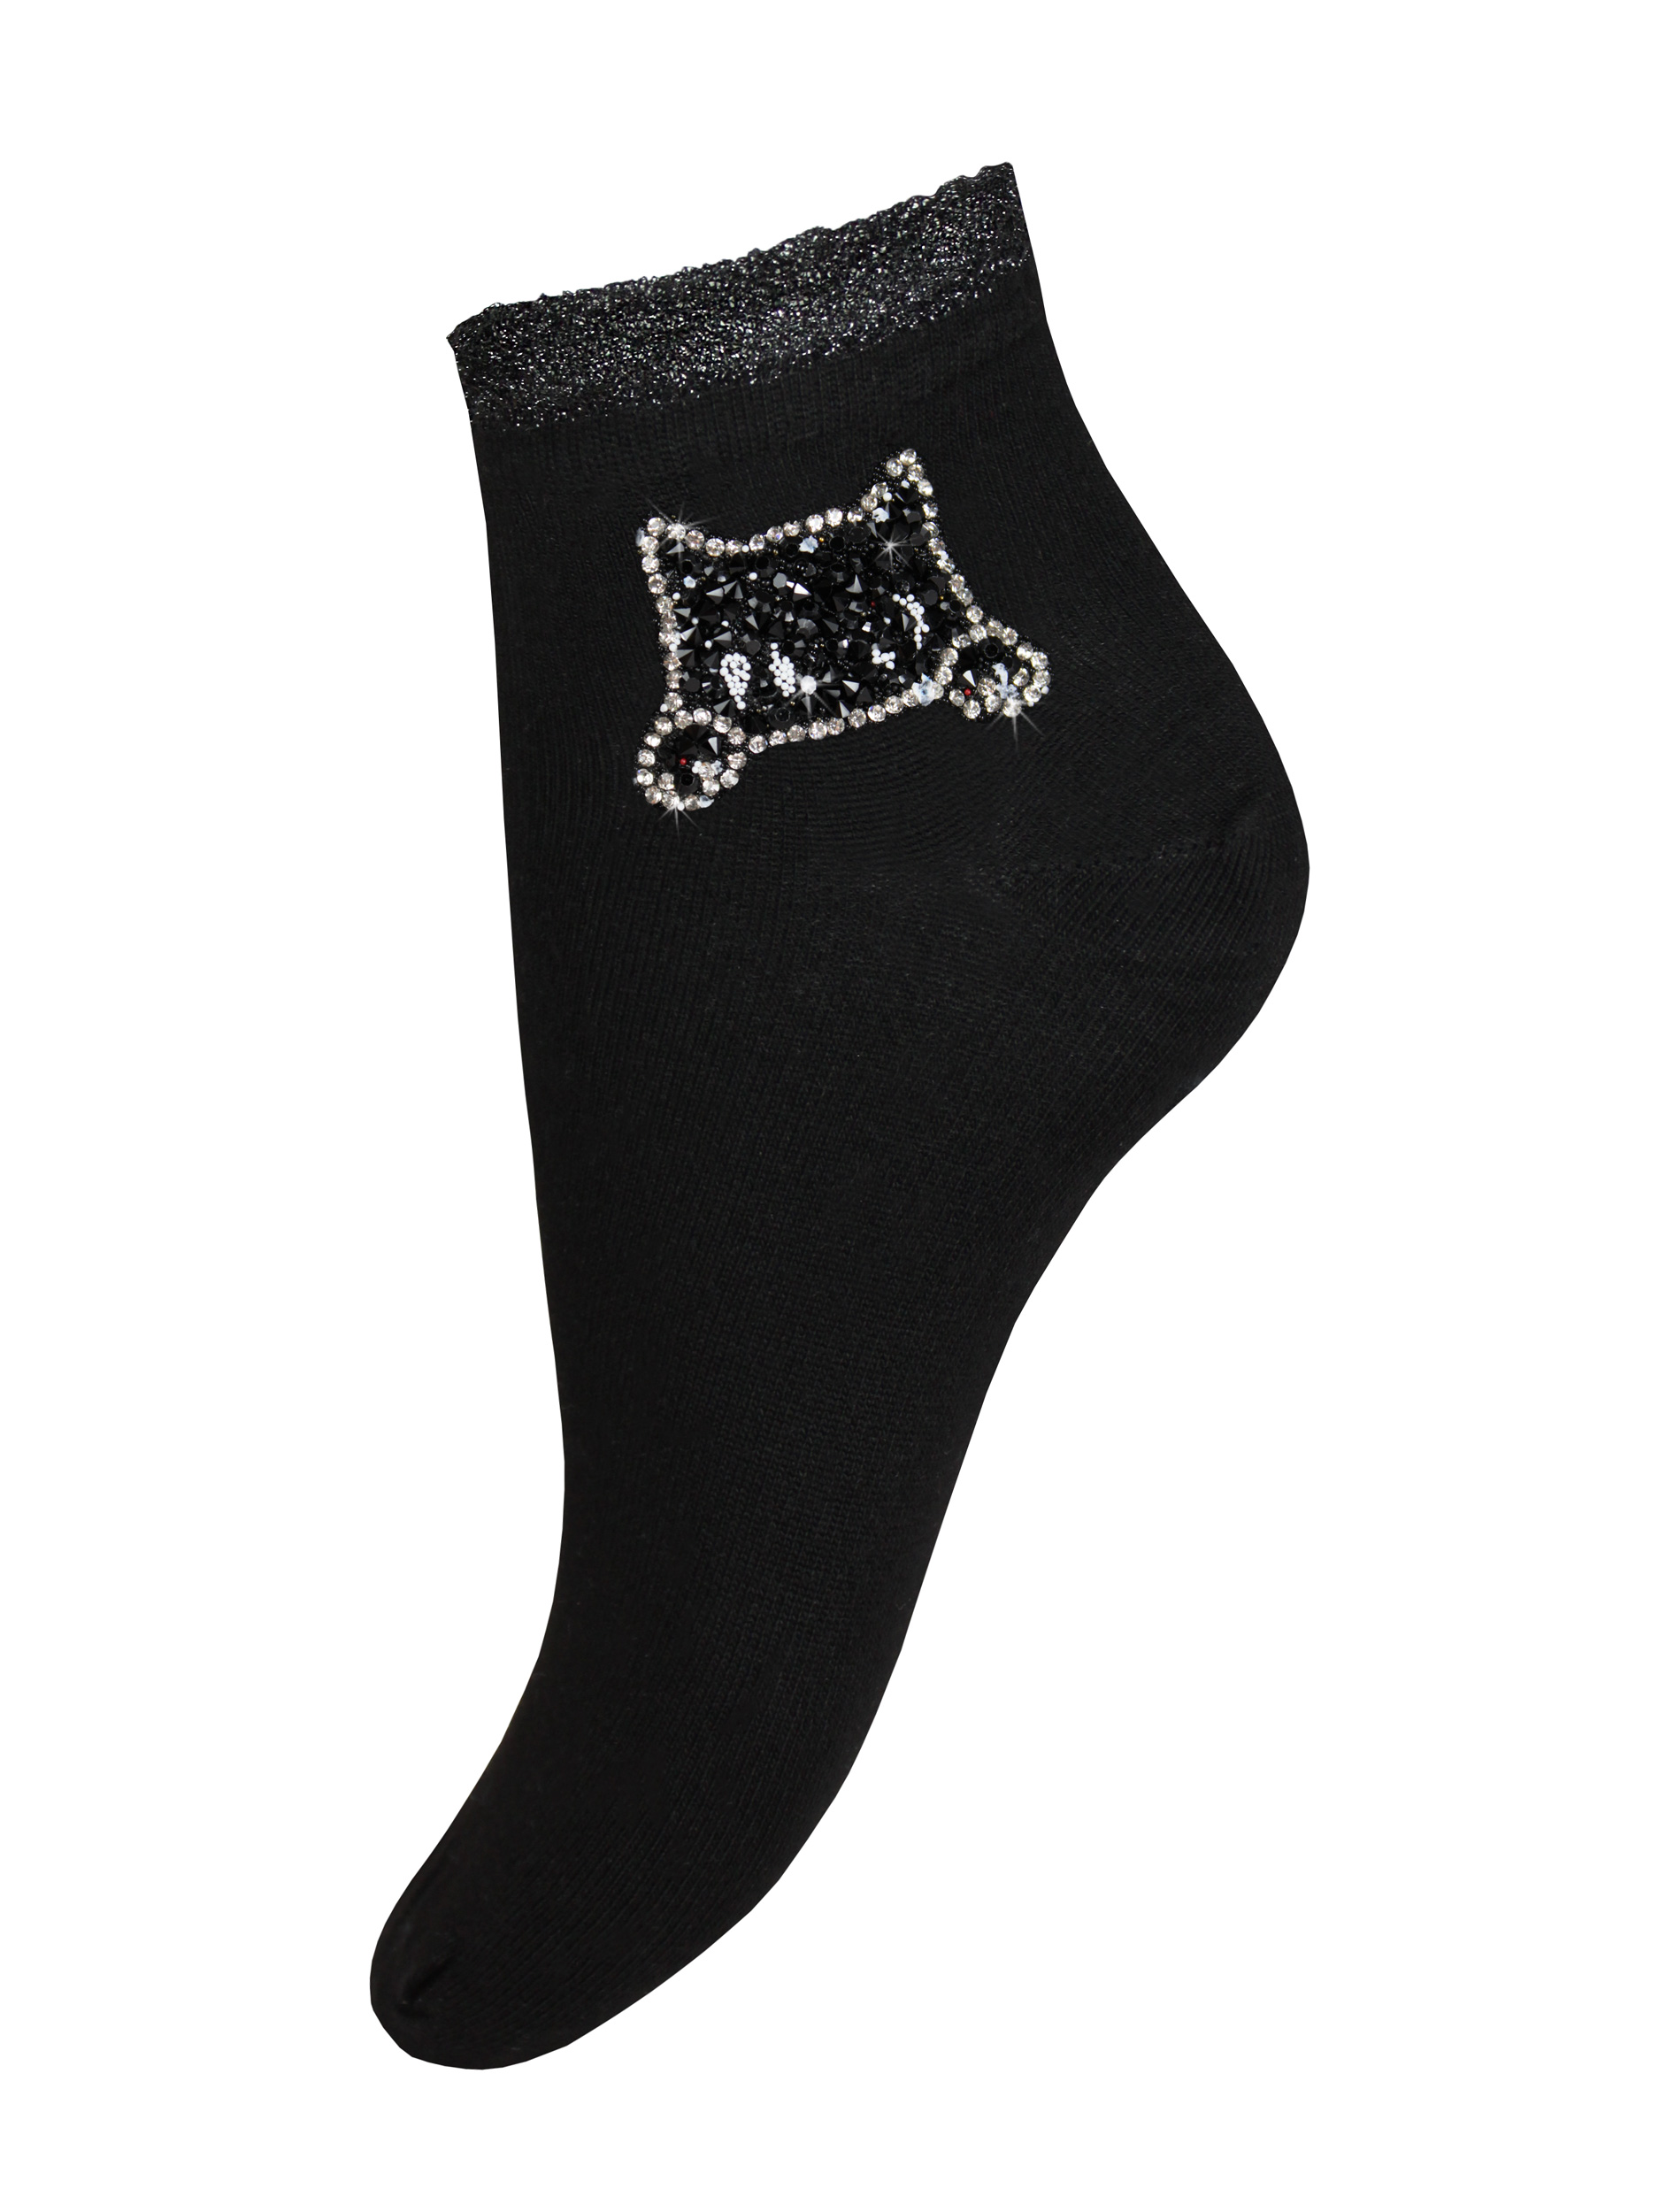 Носки женские Mademoiselle 9522-6 (кот) черные UNI